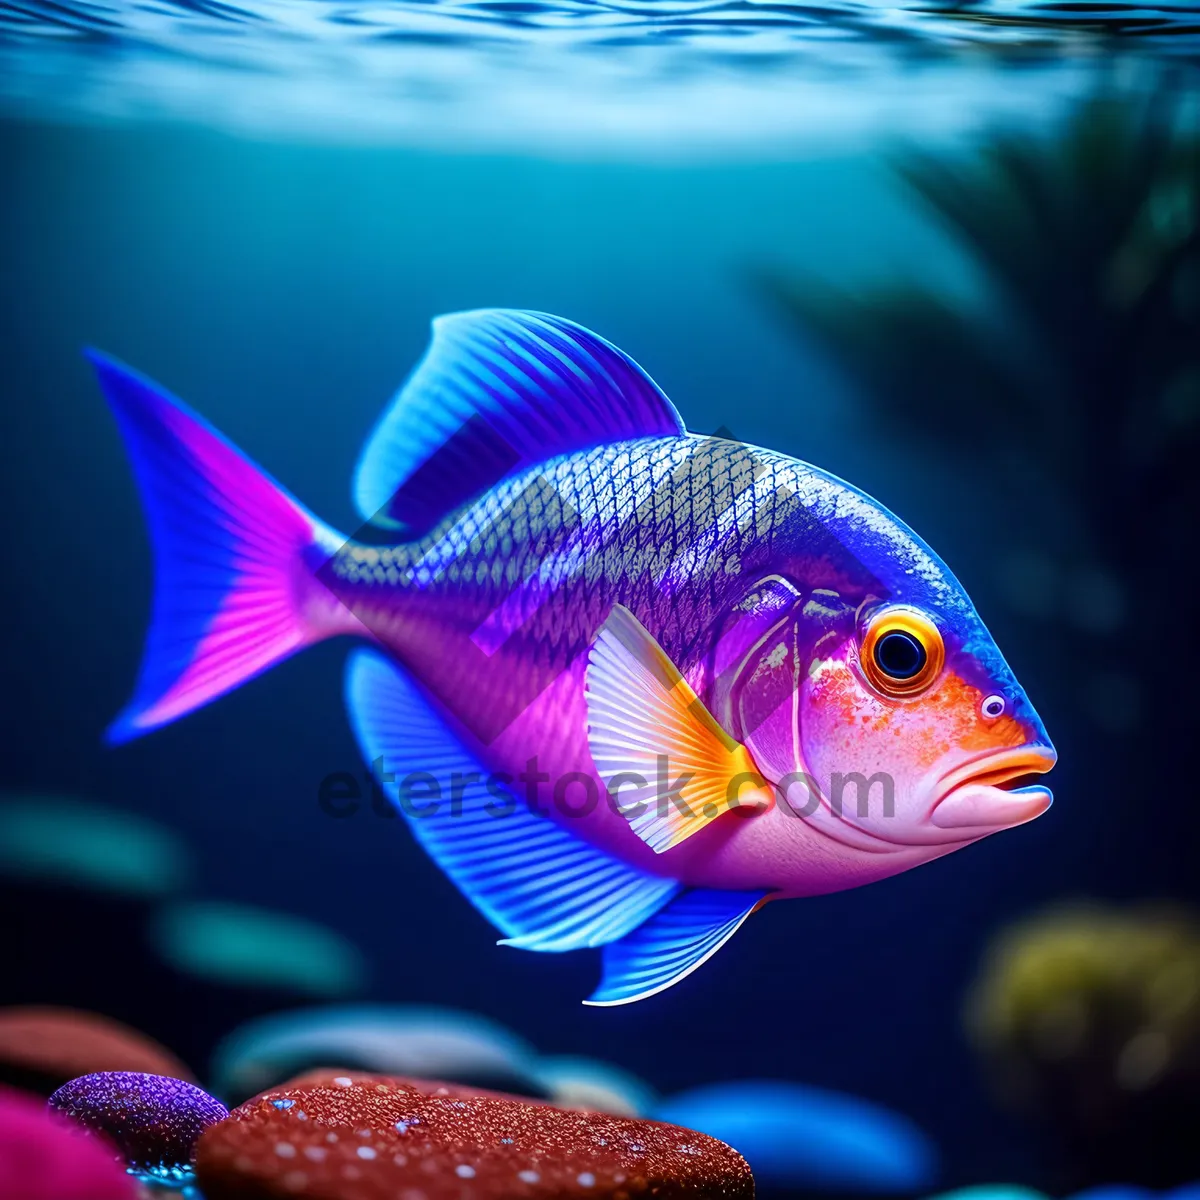 Picture of Vibrant Marine Life in Colorful Aquarium Reef.